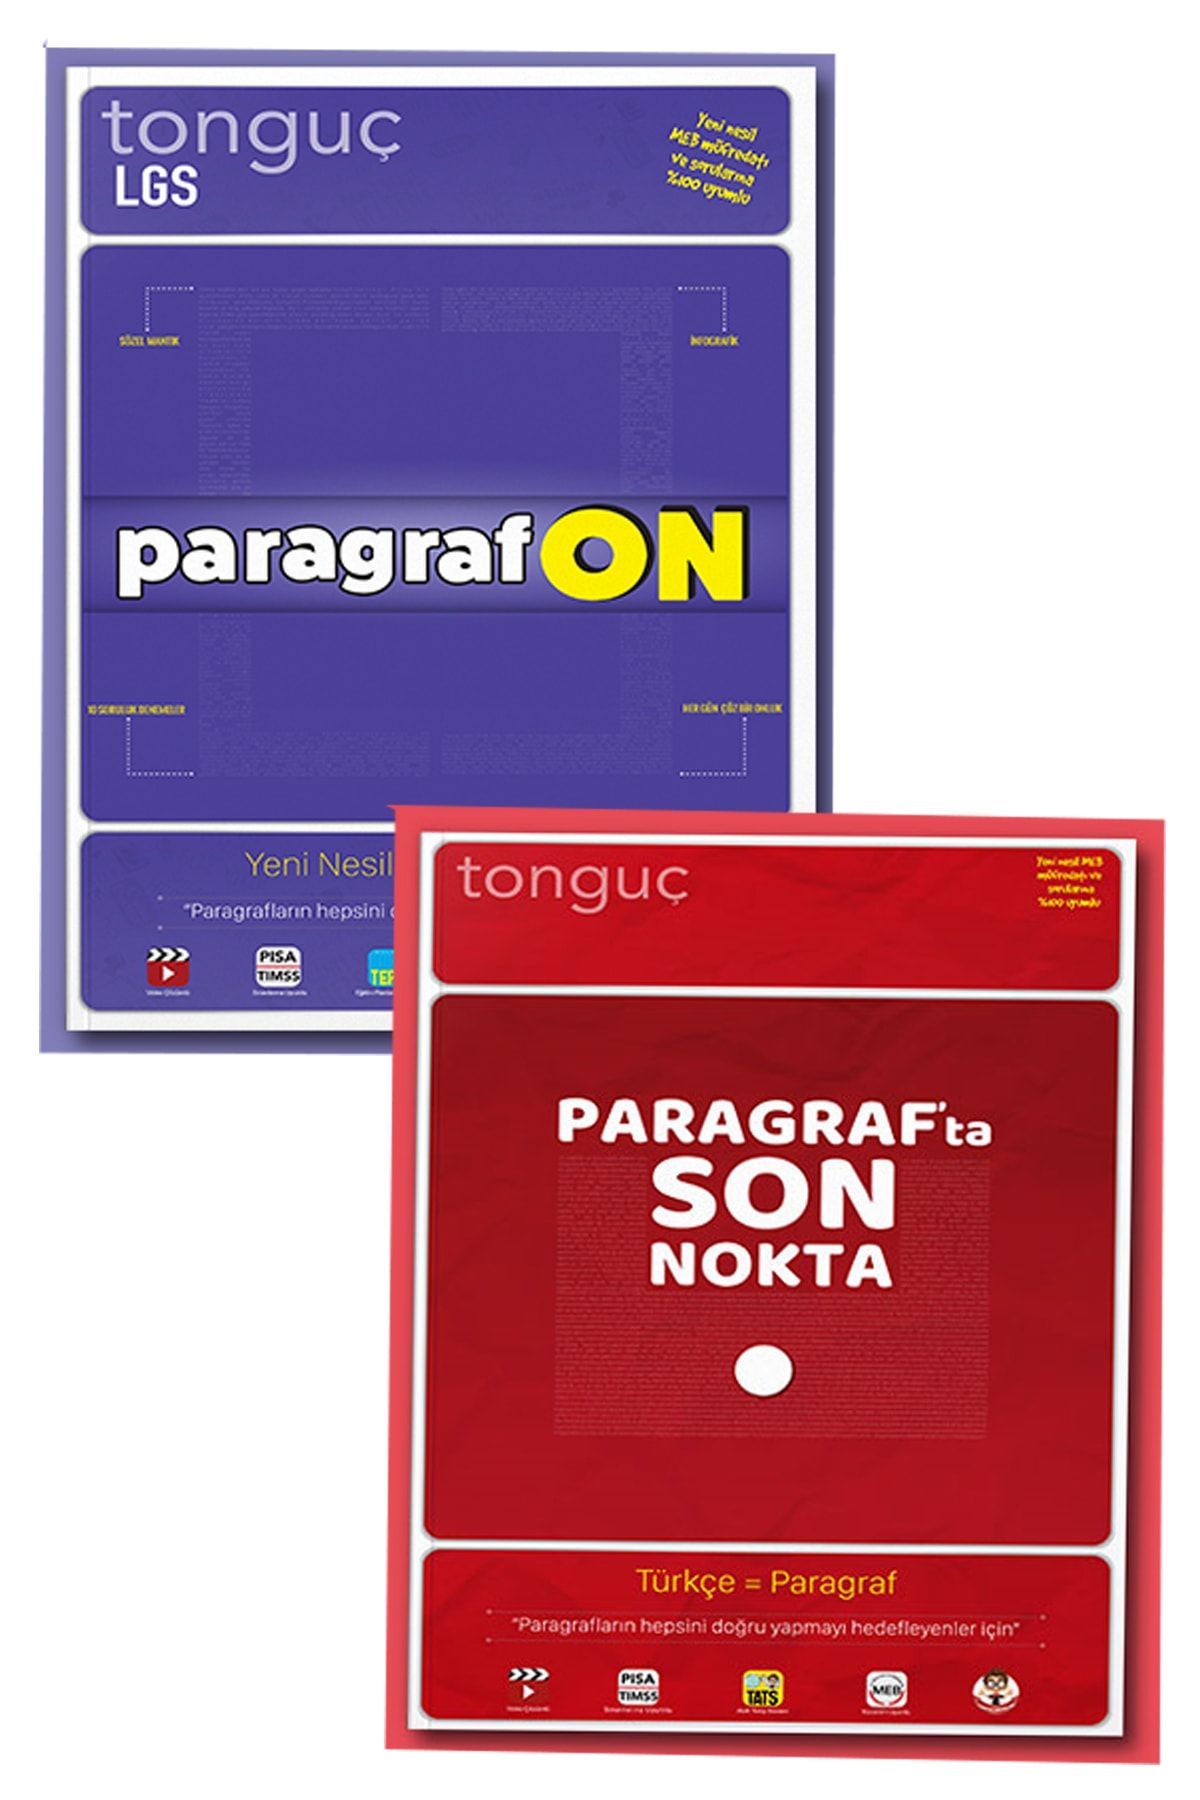 Tonguç Yayınları Paragrafon + Paragrafta Son Nokta - 5,6,7. Sınıf Ve Lgs